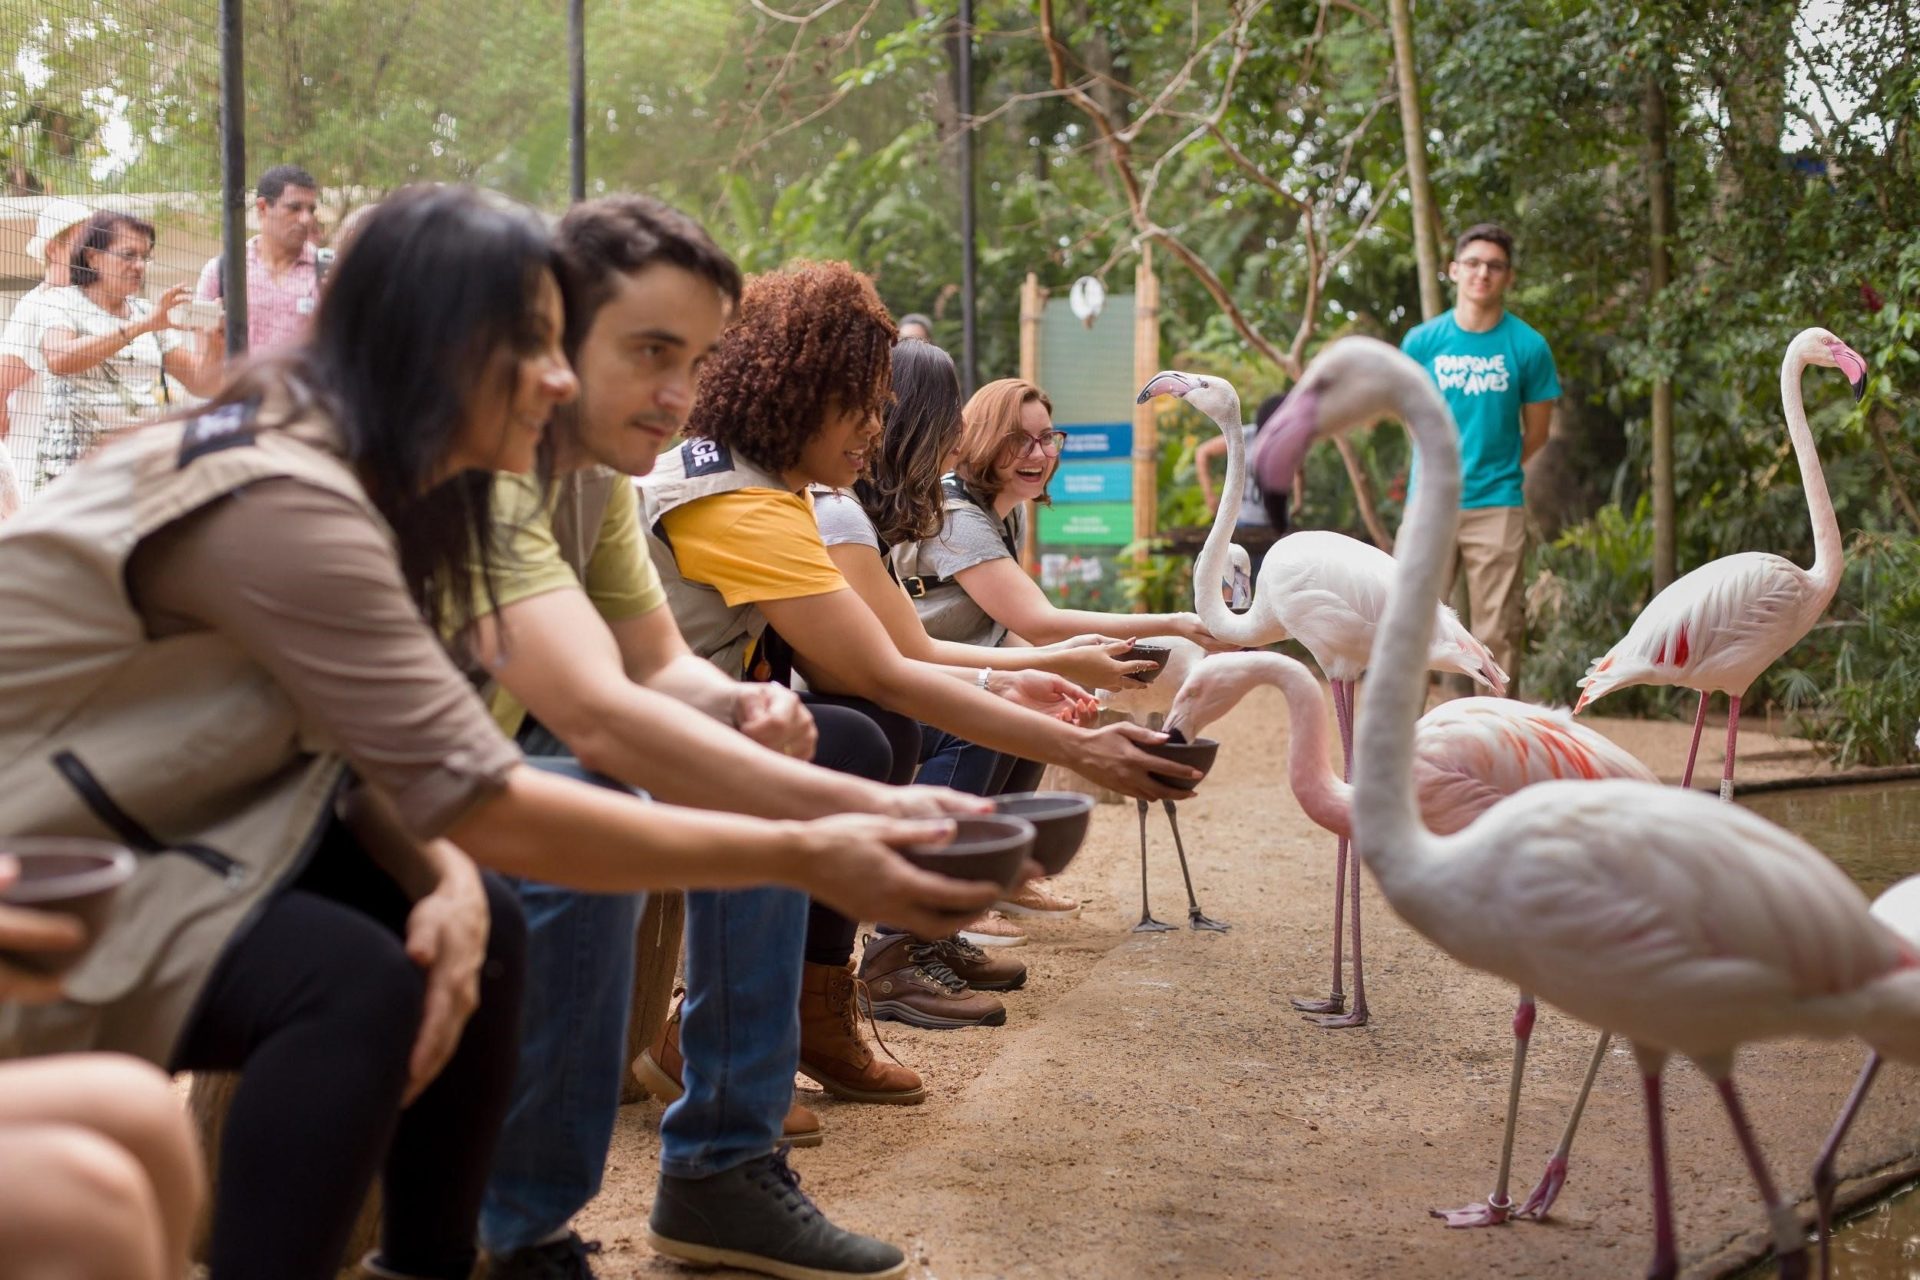 Turistas alimentando flamingos no Parque das Aves